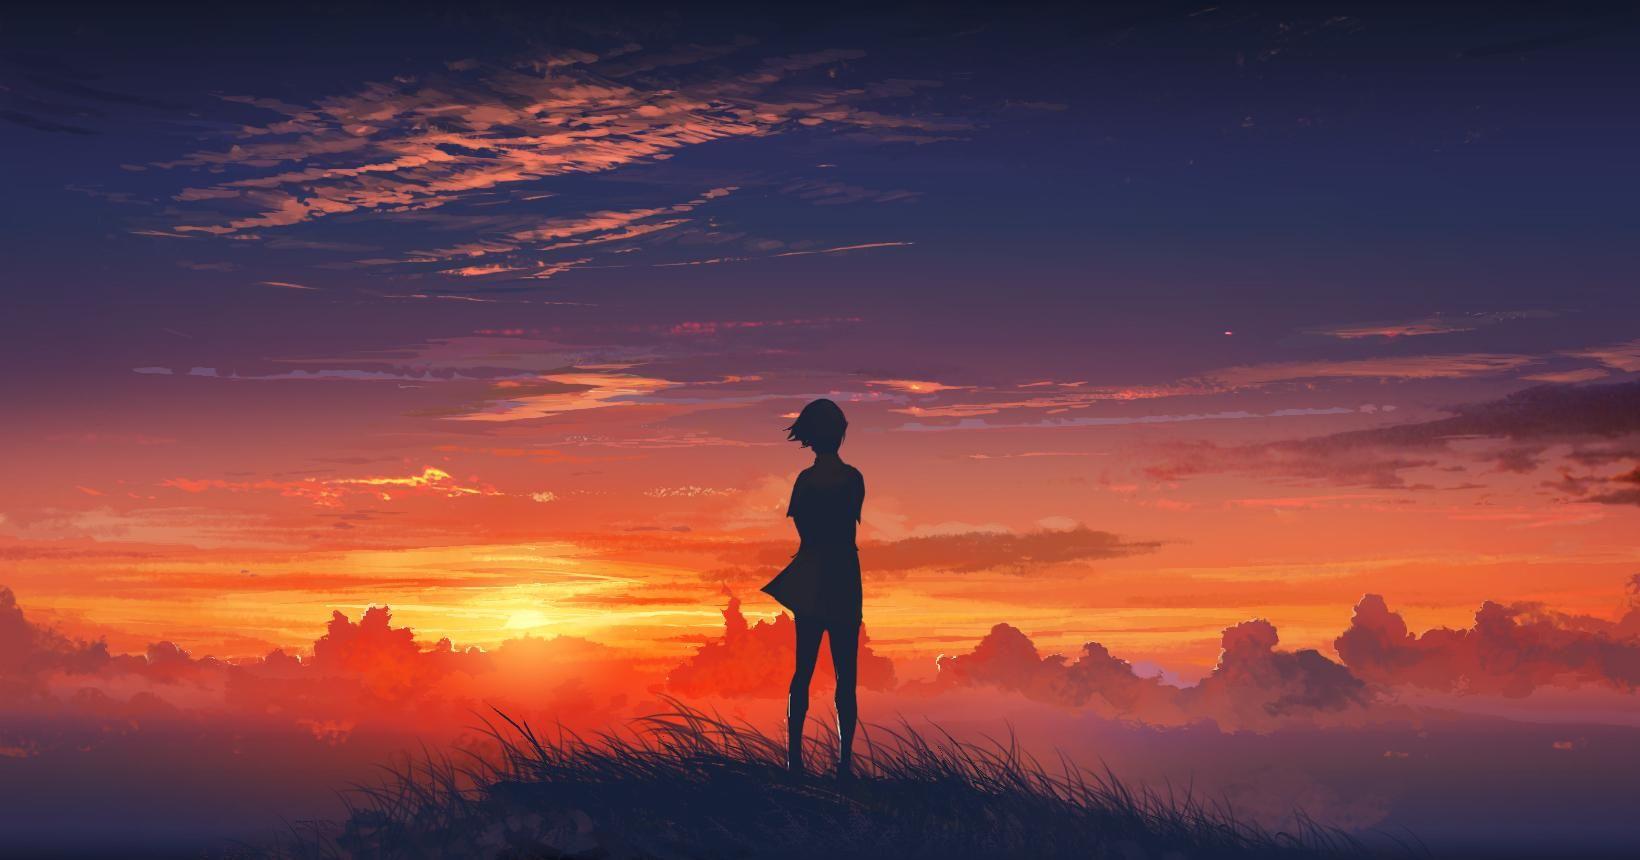 Sunset Anime. 風景デザイン, アート背景, 夕焼け